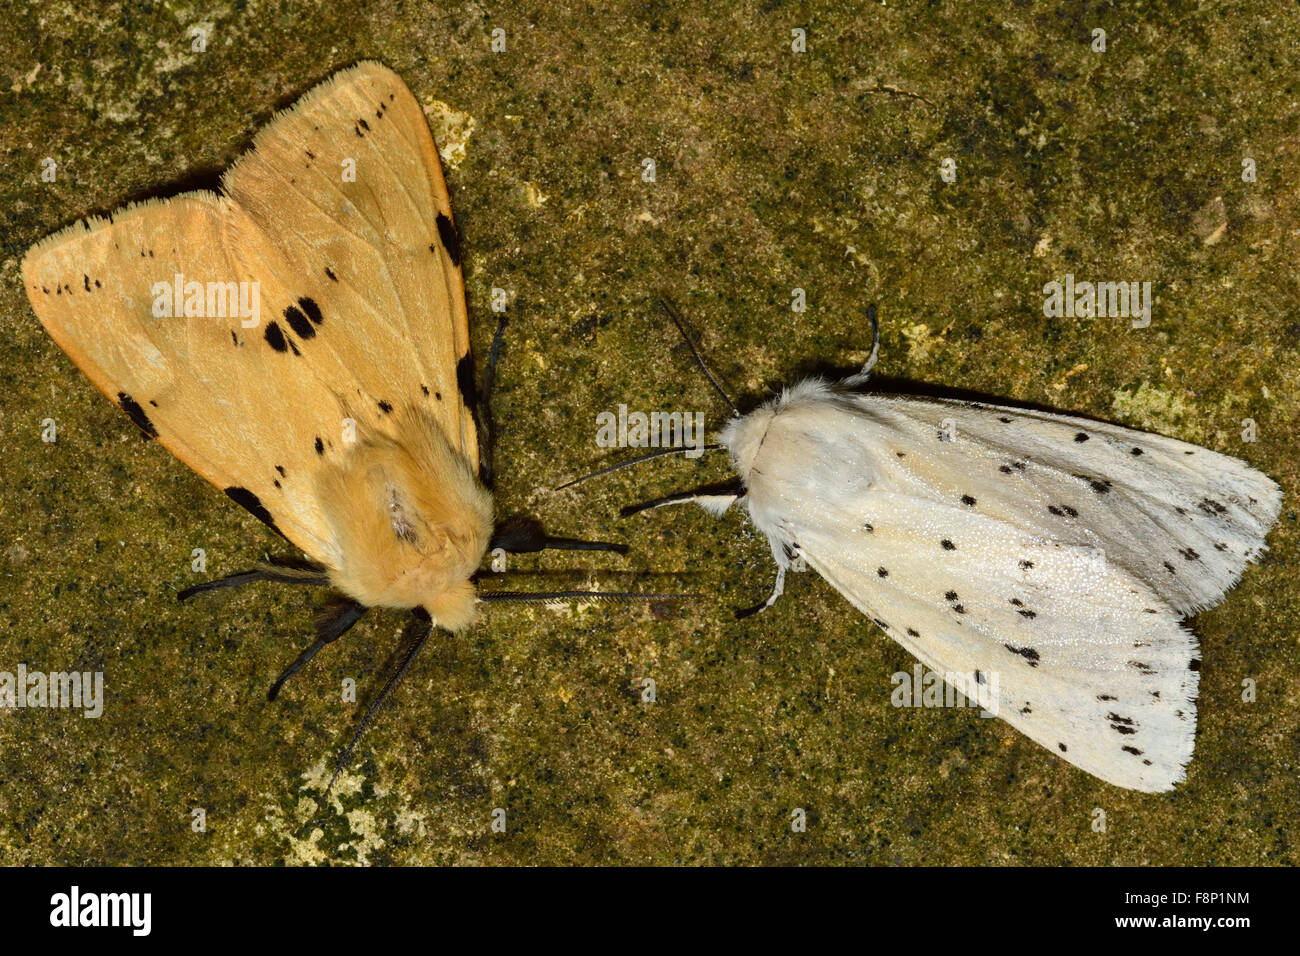 Buff ermine (Spilosoma luteum) and white ermine (Spilosoma lubricipeda) Stock Photo